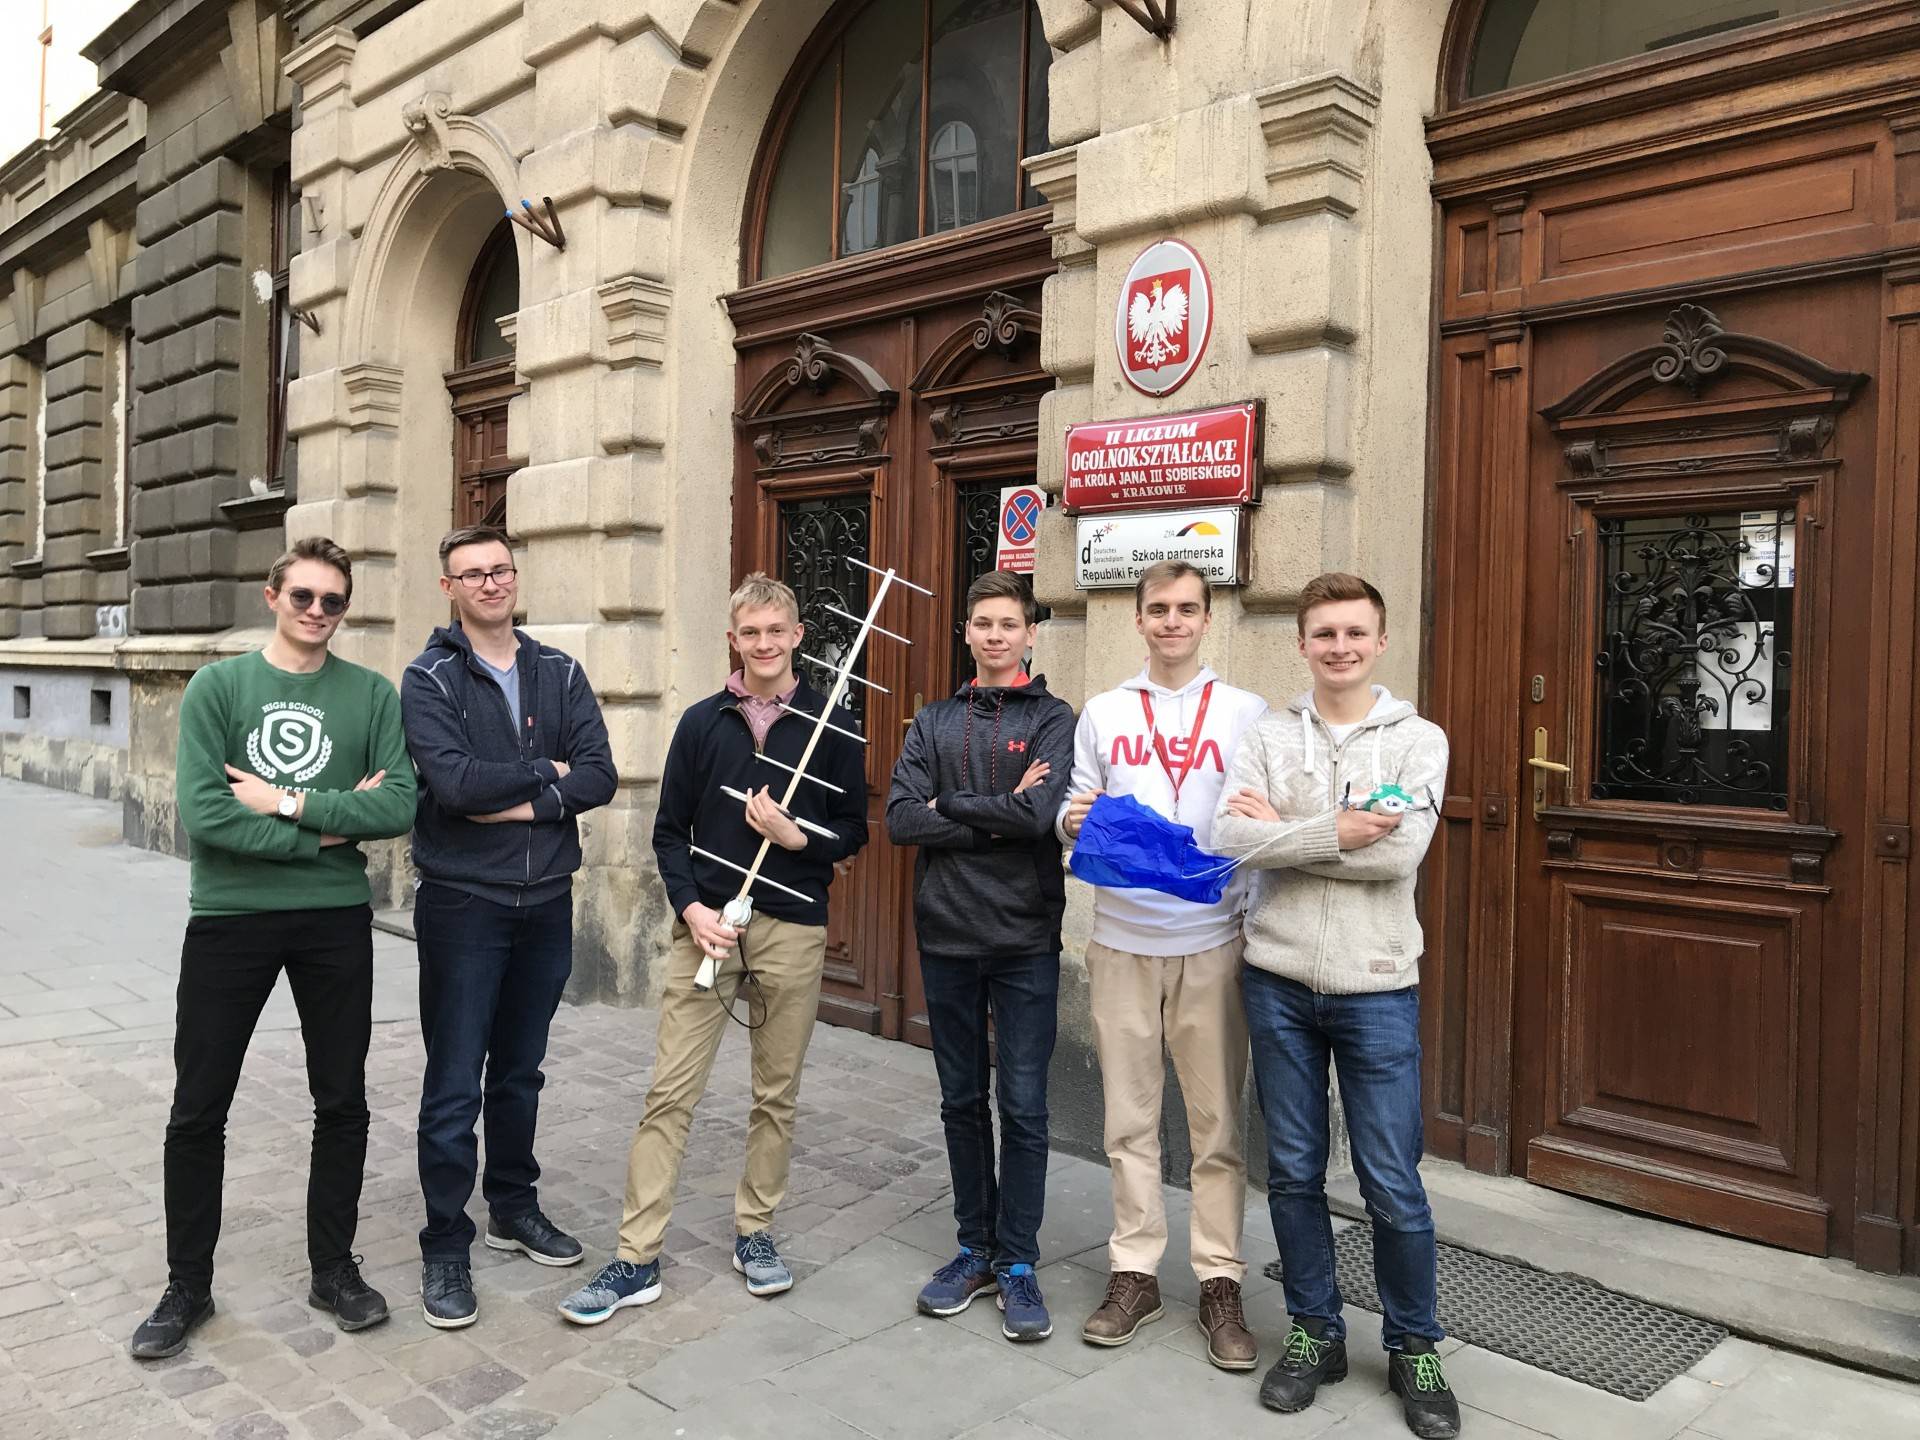 Krakowscy licealiści podjęli się wyjątkowego zadania. Dadzą radę?